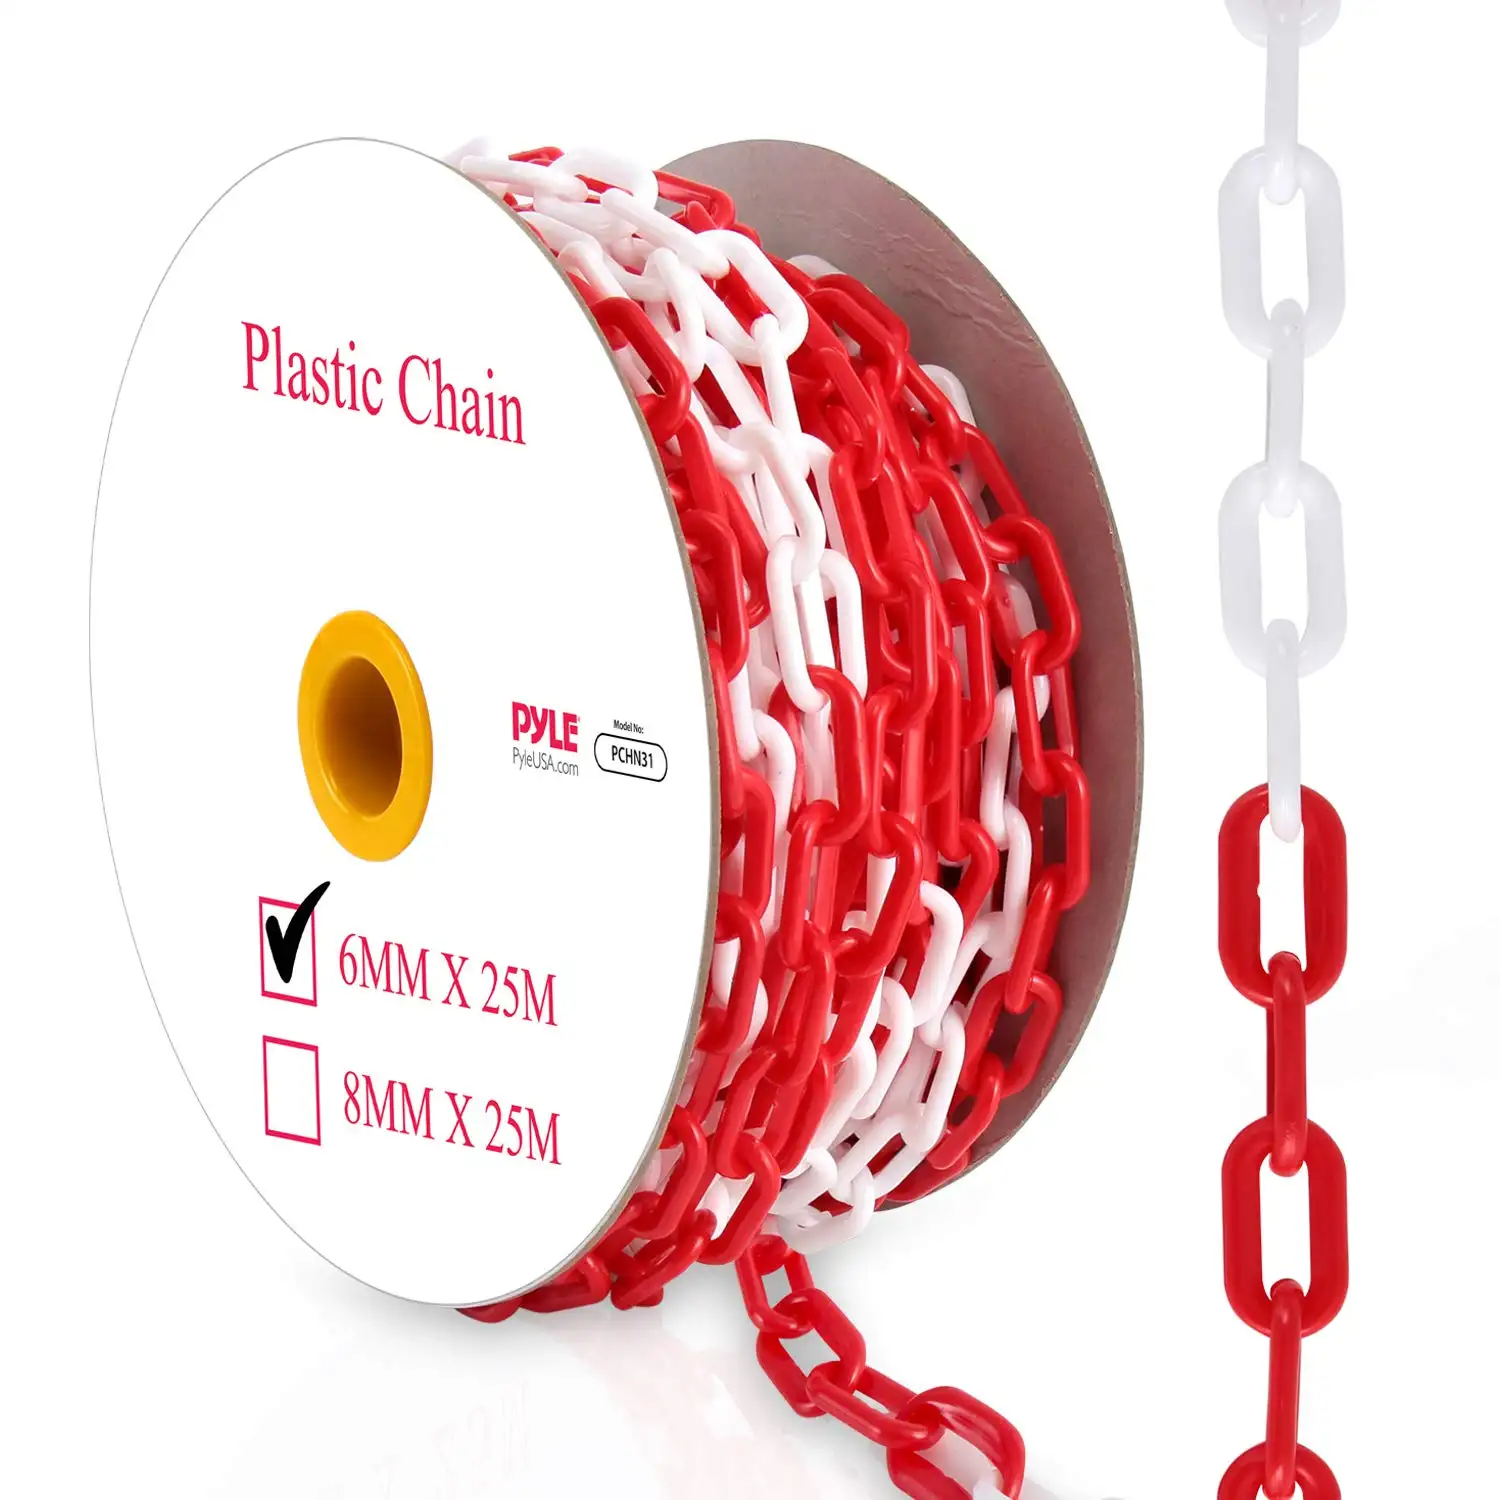 Maglie di plastica della barriera della catena di sicurezza SHIBO-82 'Ft catena di sicurezza di avvertenza 50m Per rotolo catena di sicurezza in plastica bianca rossa Per il traffico